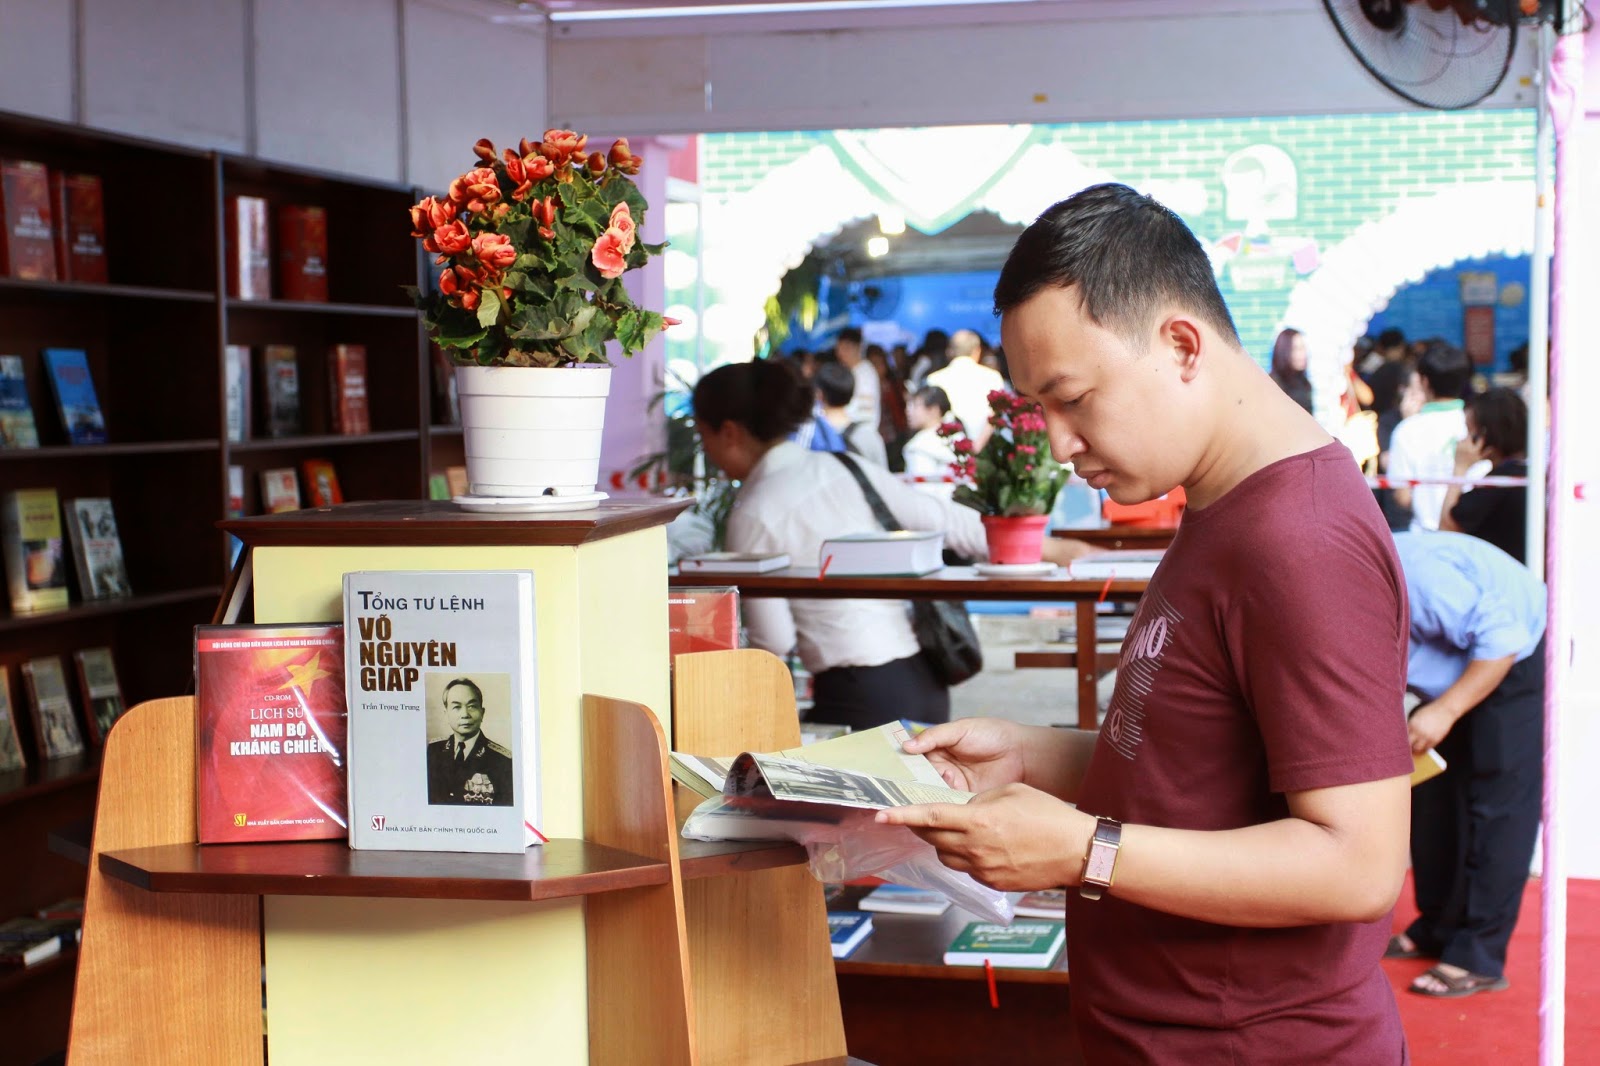 Chụp hình sự kiện khai mạc hội sách tại thành phố Hồ Chí Minh